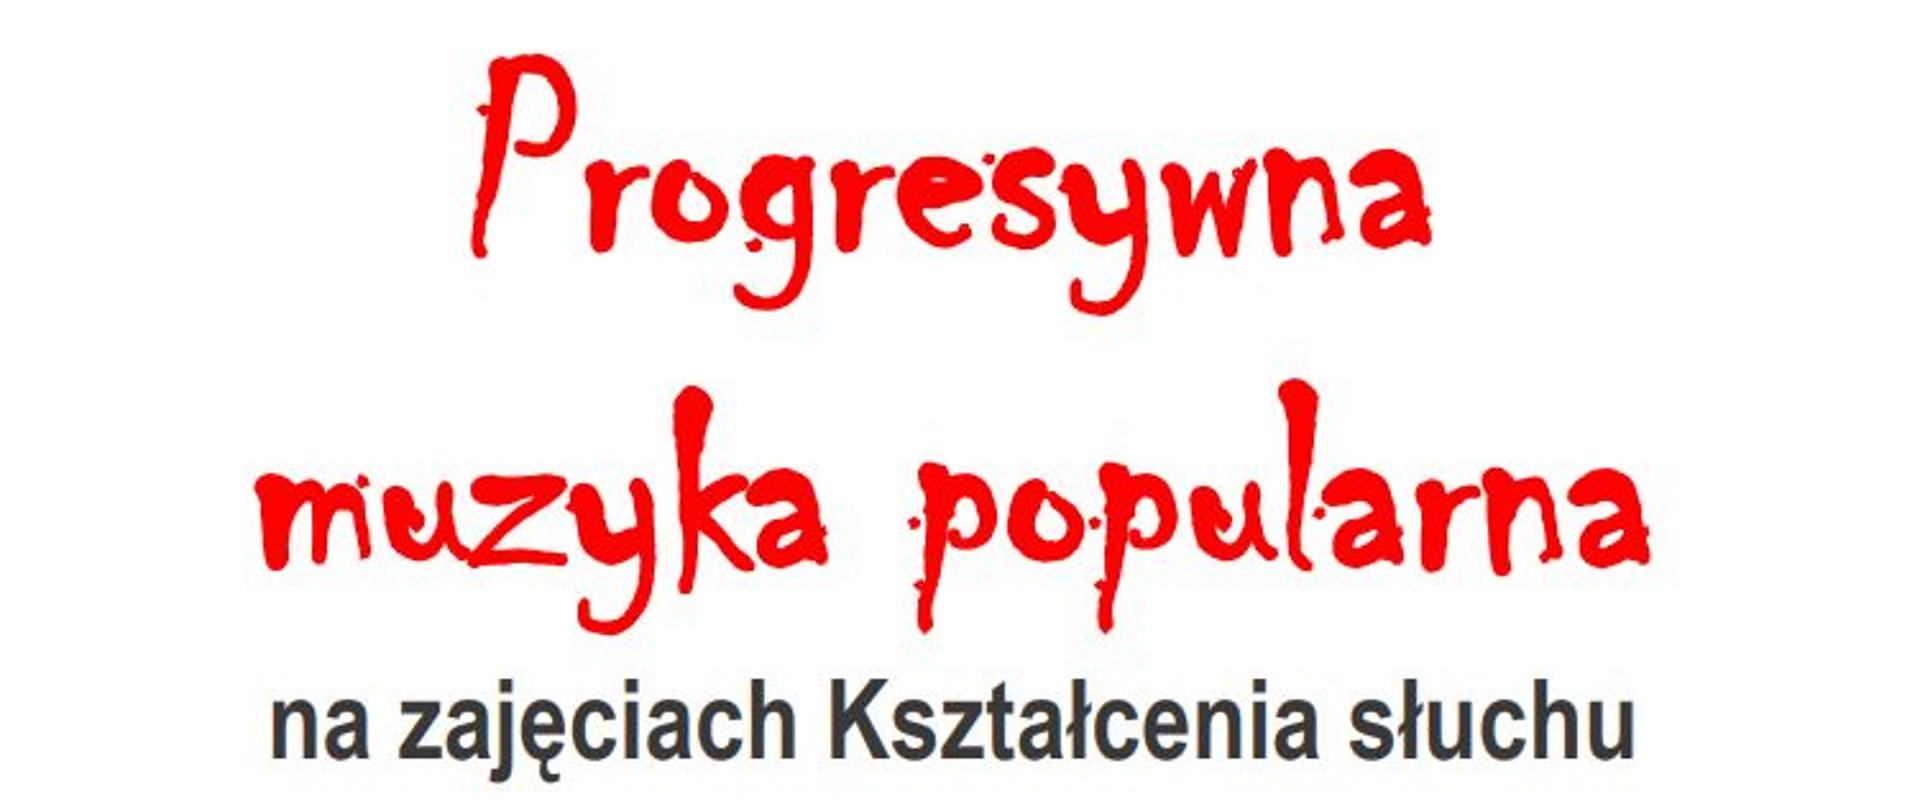 Plakat przedstawia zaproszenie na lekcję kształcenia słuchu z dr Andrzejem Mądro. Temat lekcji napisany jest na czerwono na białym tle - Progresywna muzyka popularna na zajęciach Kształcenia słuchu